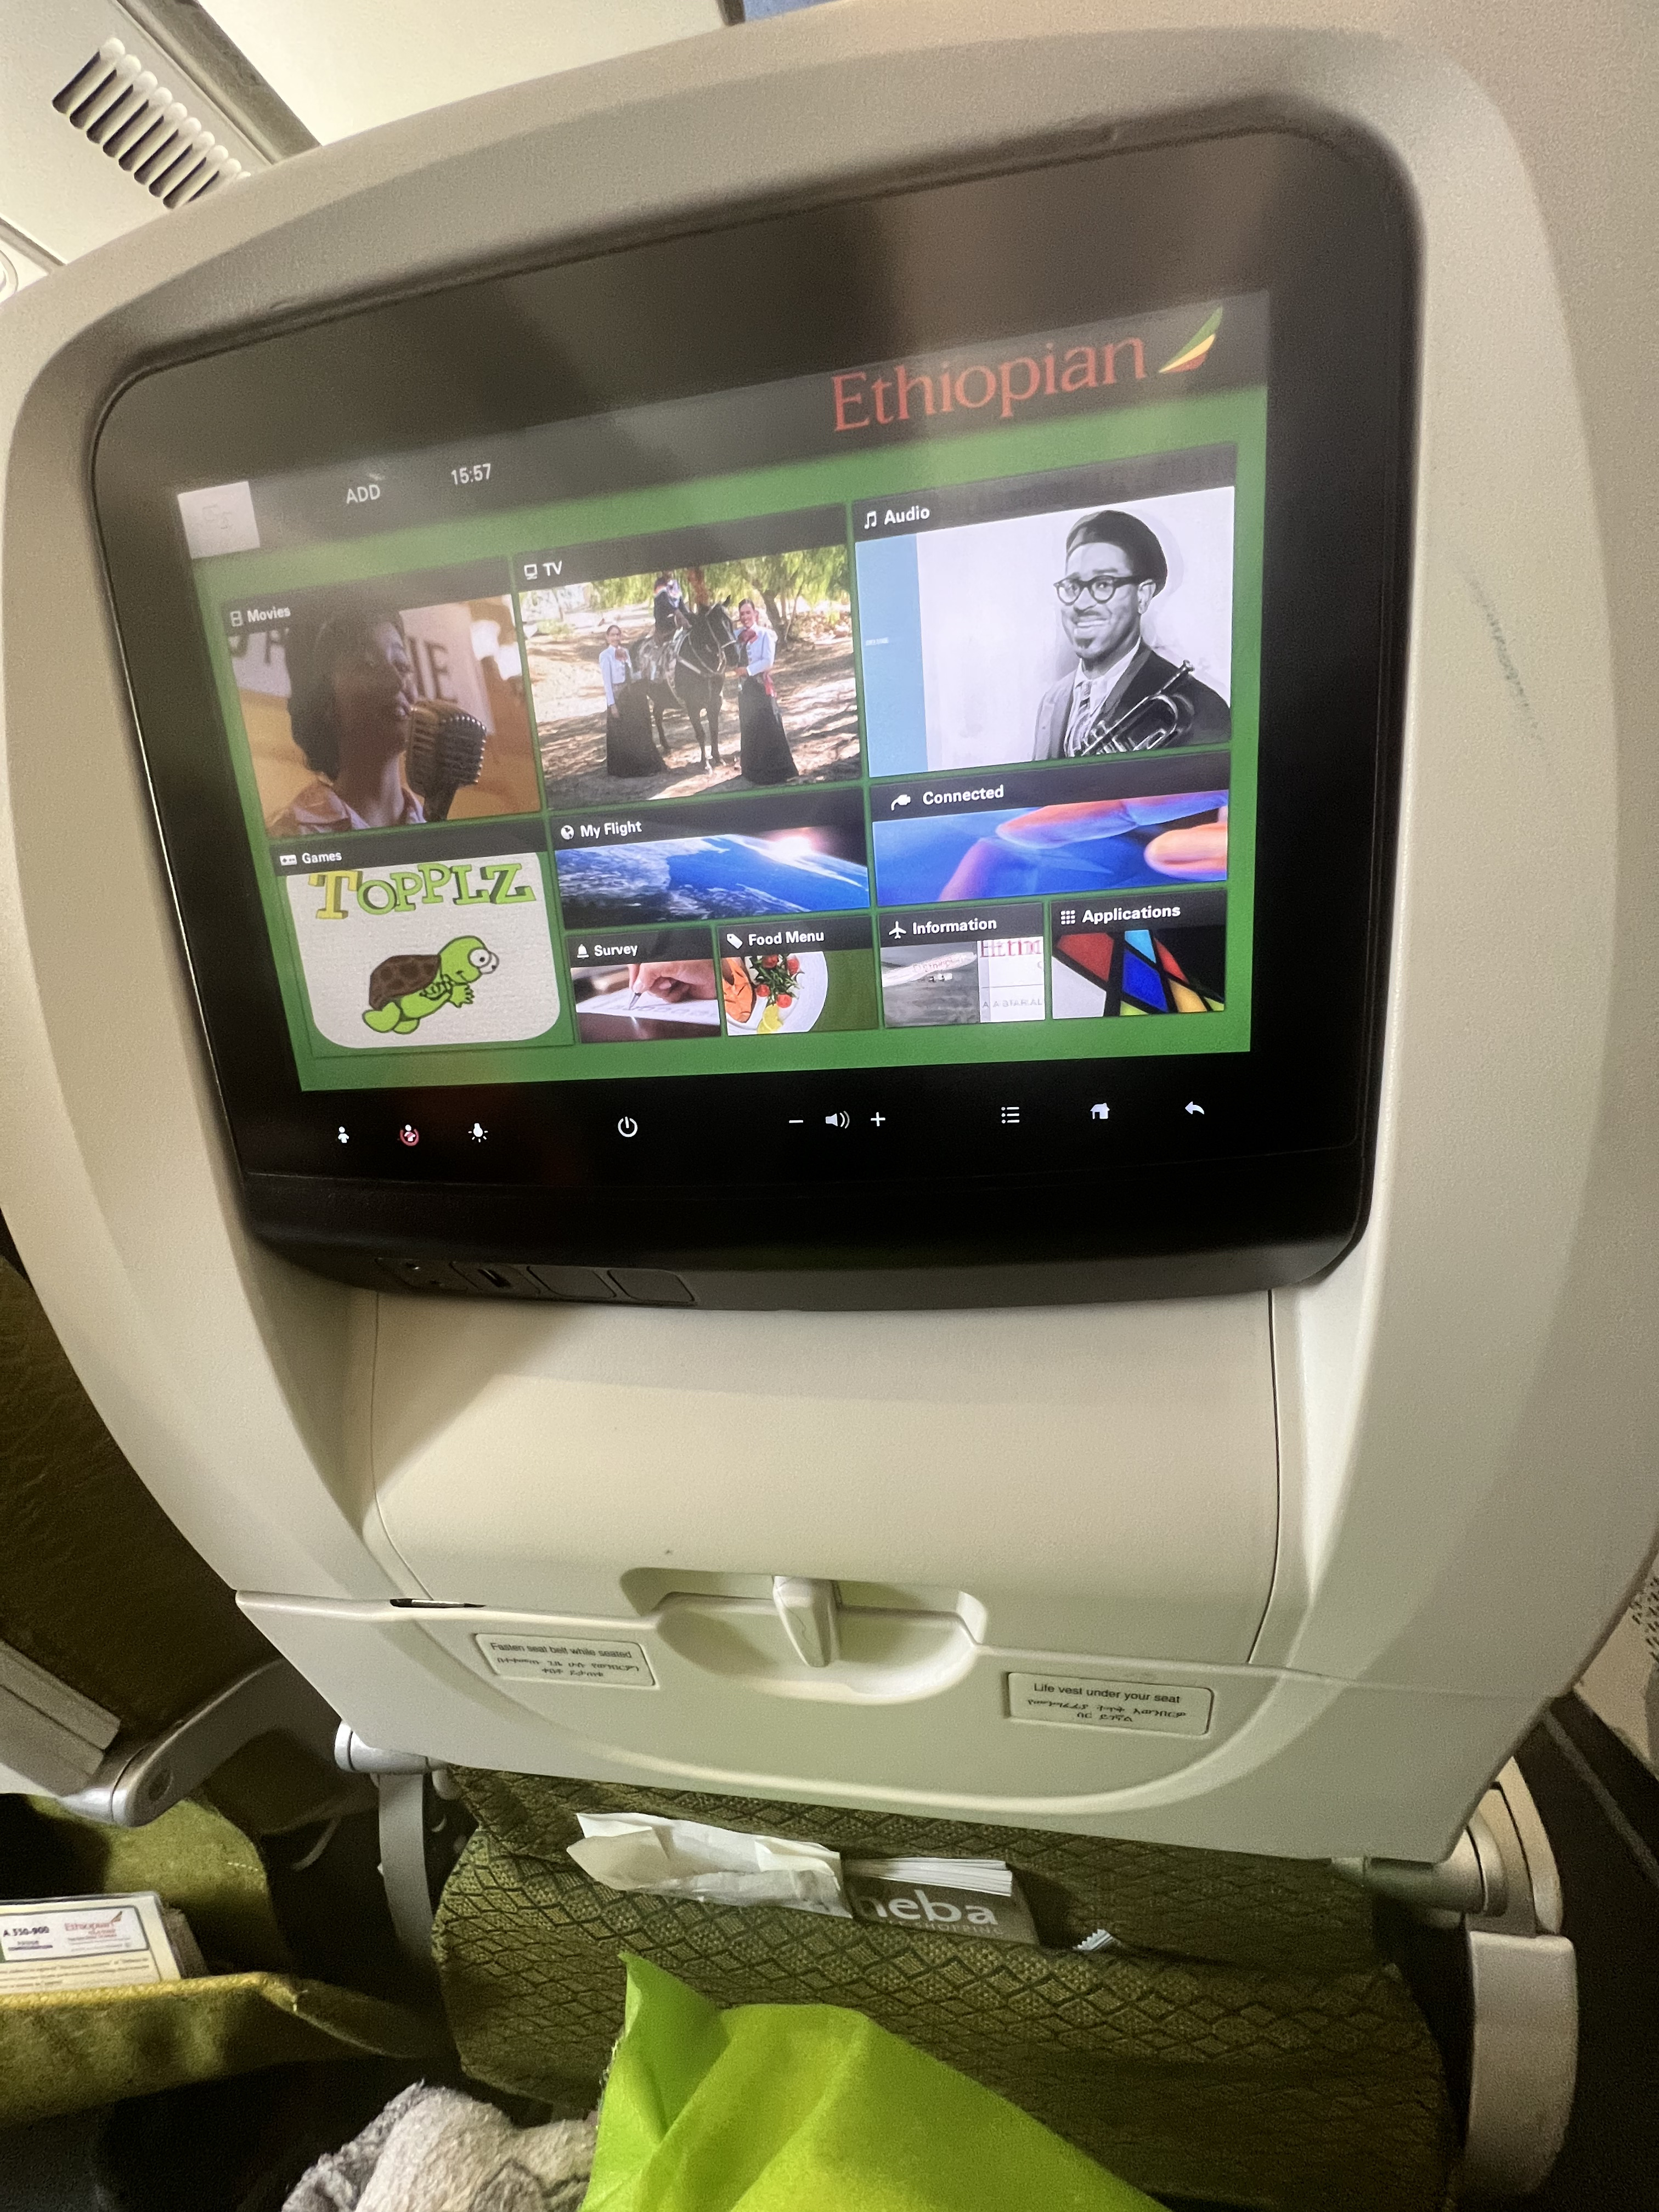 Ethiopian Airlines entertainment